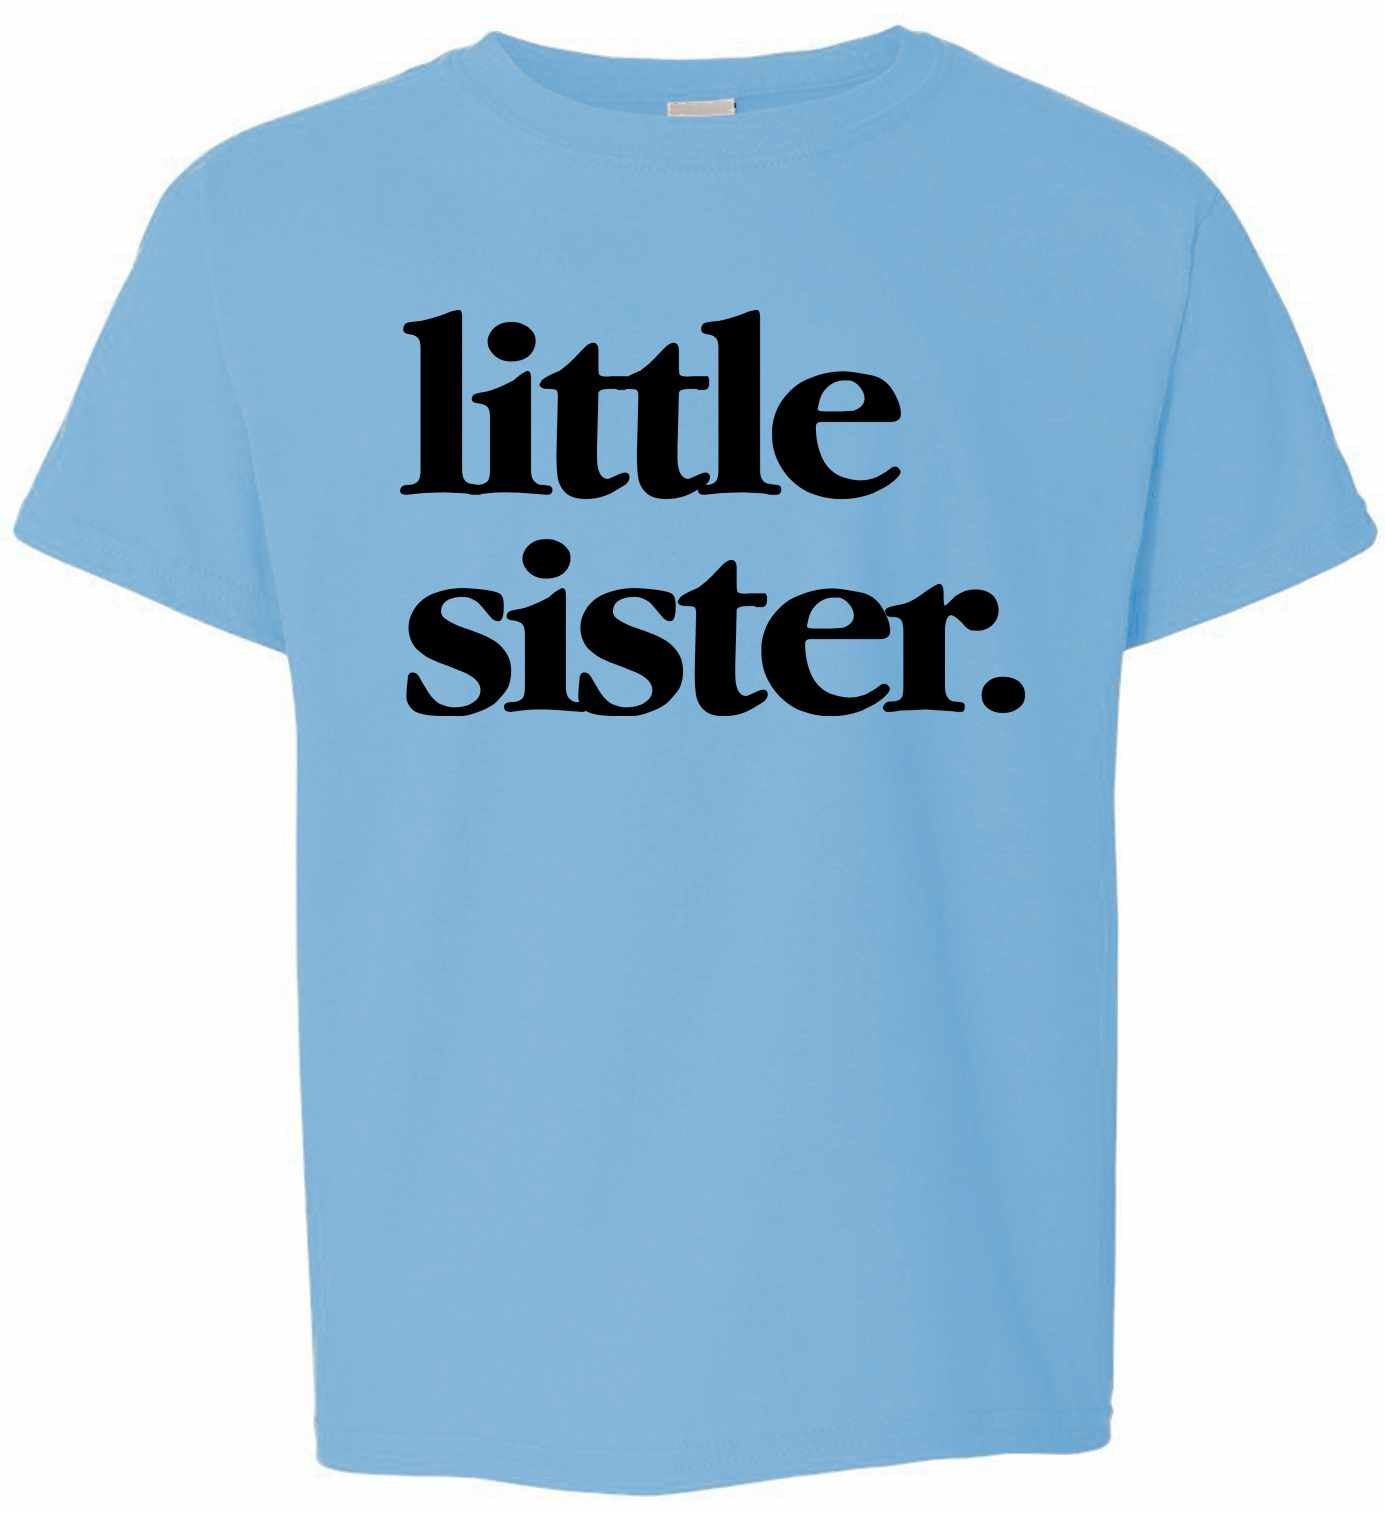 Little Sister on Kids T-Shirt (#1321-201)